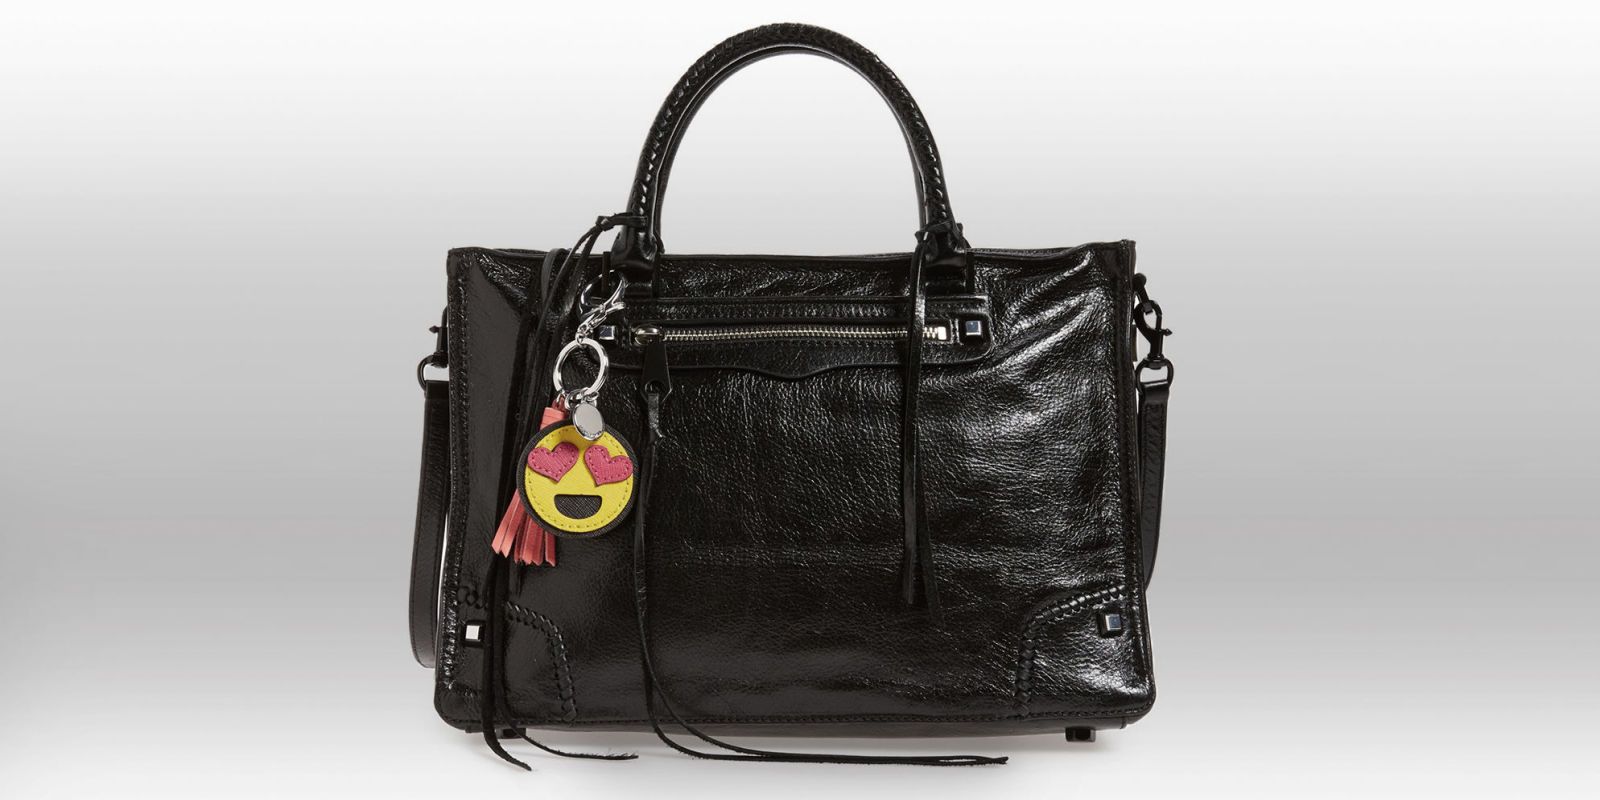 pu leather bag purse charm cute| Alibaba.com